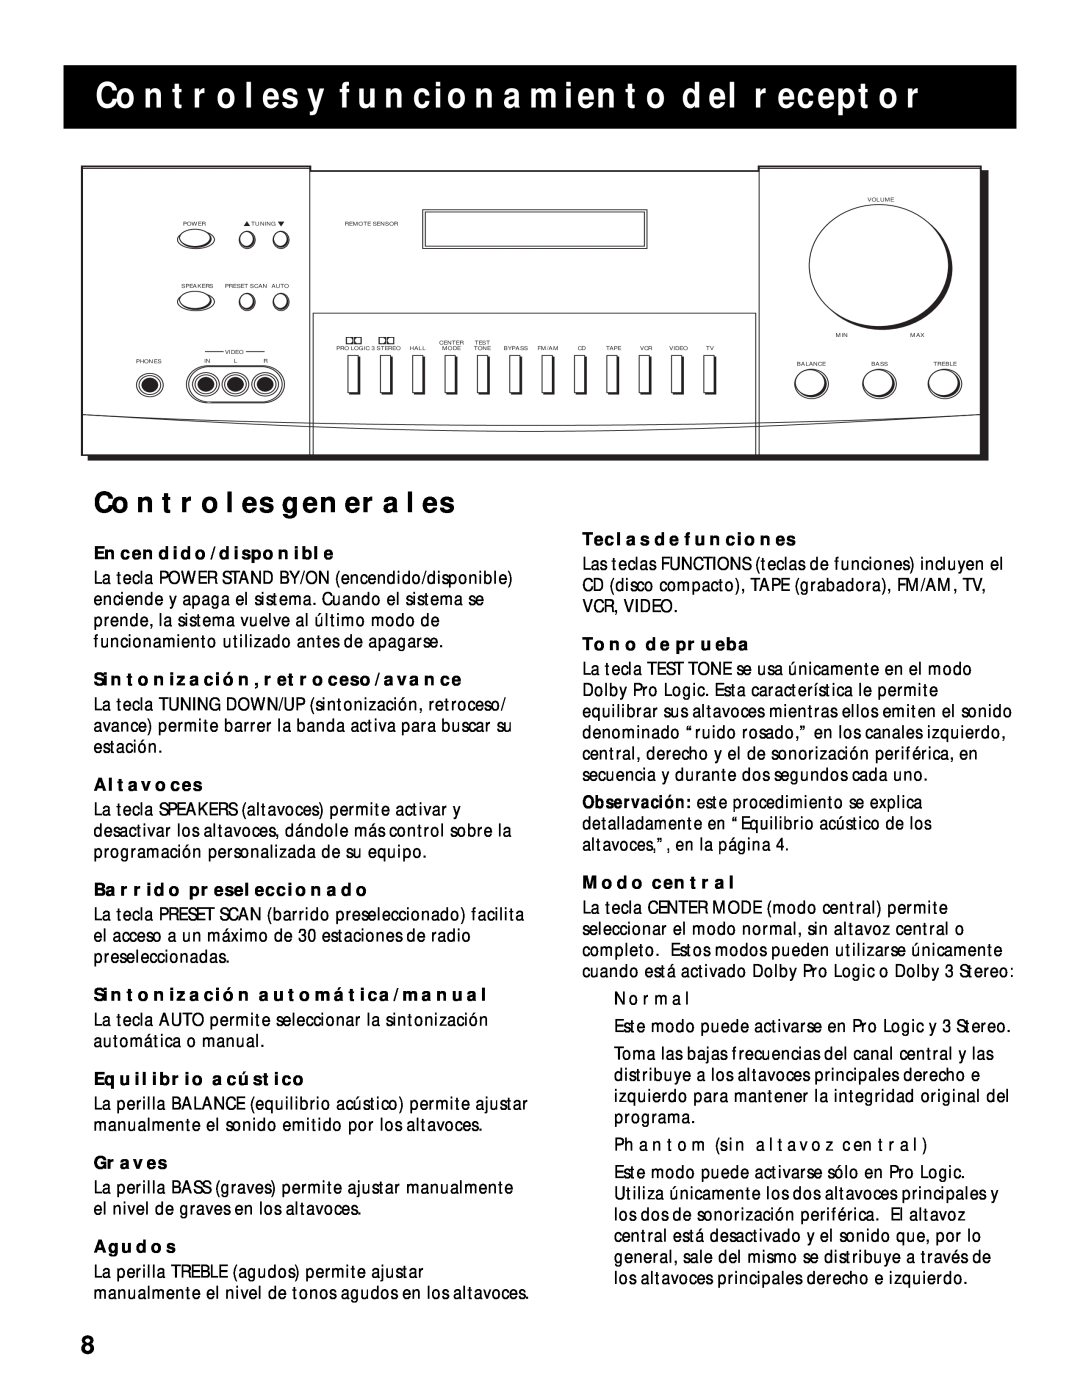 RCA RV-9968, RV-9978 manual Controles Y Funcionamiento Del Receptor, Controles Generales 